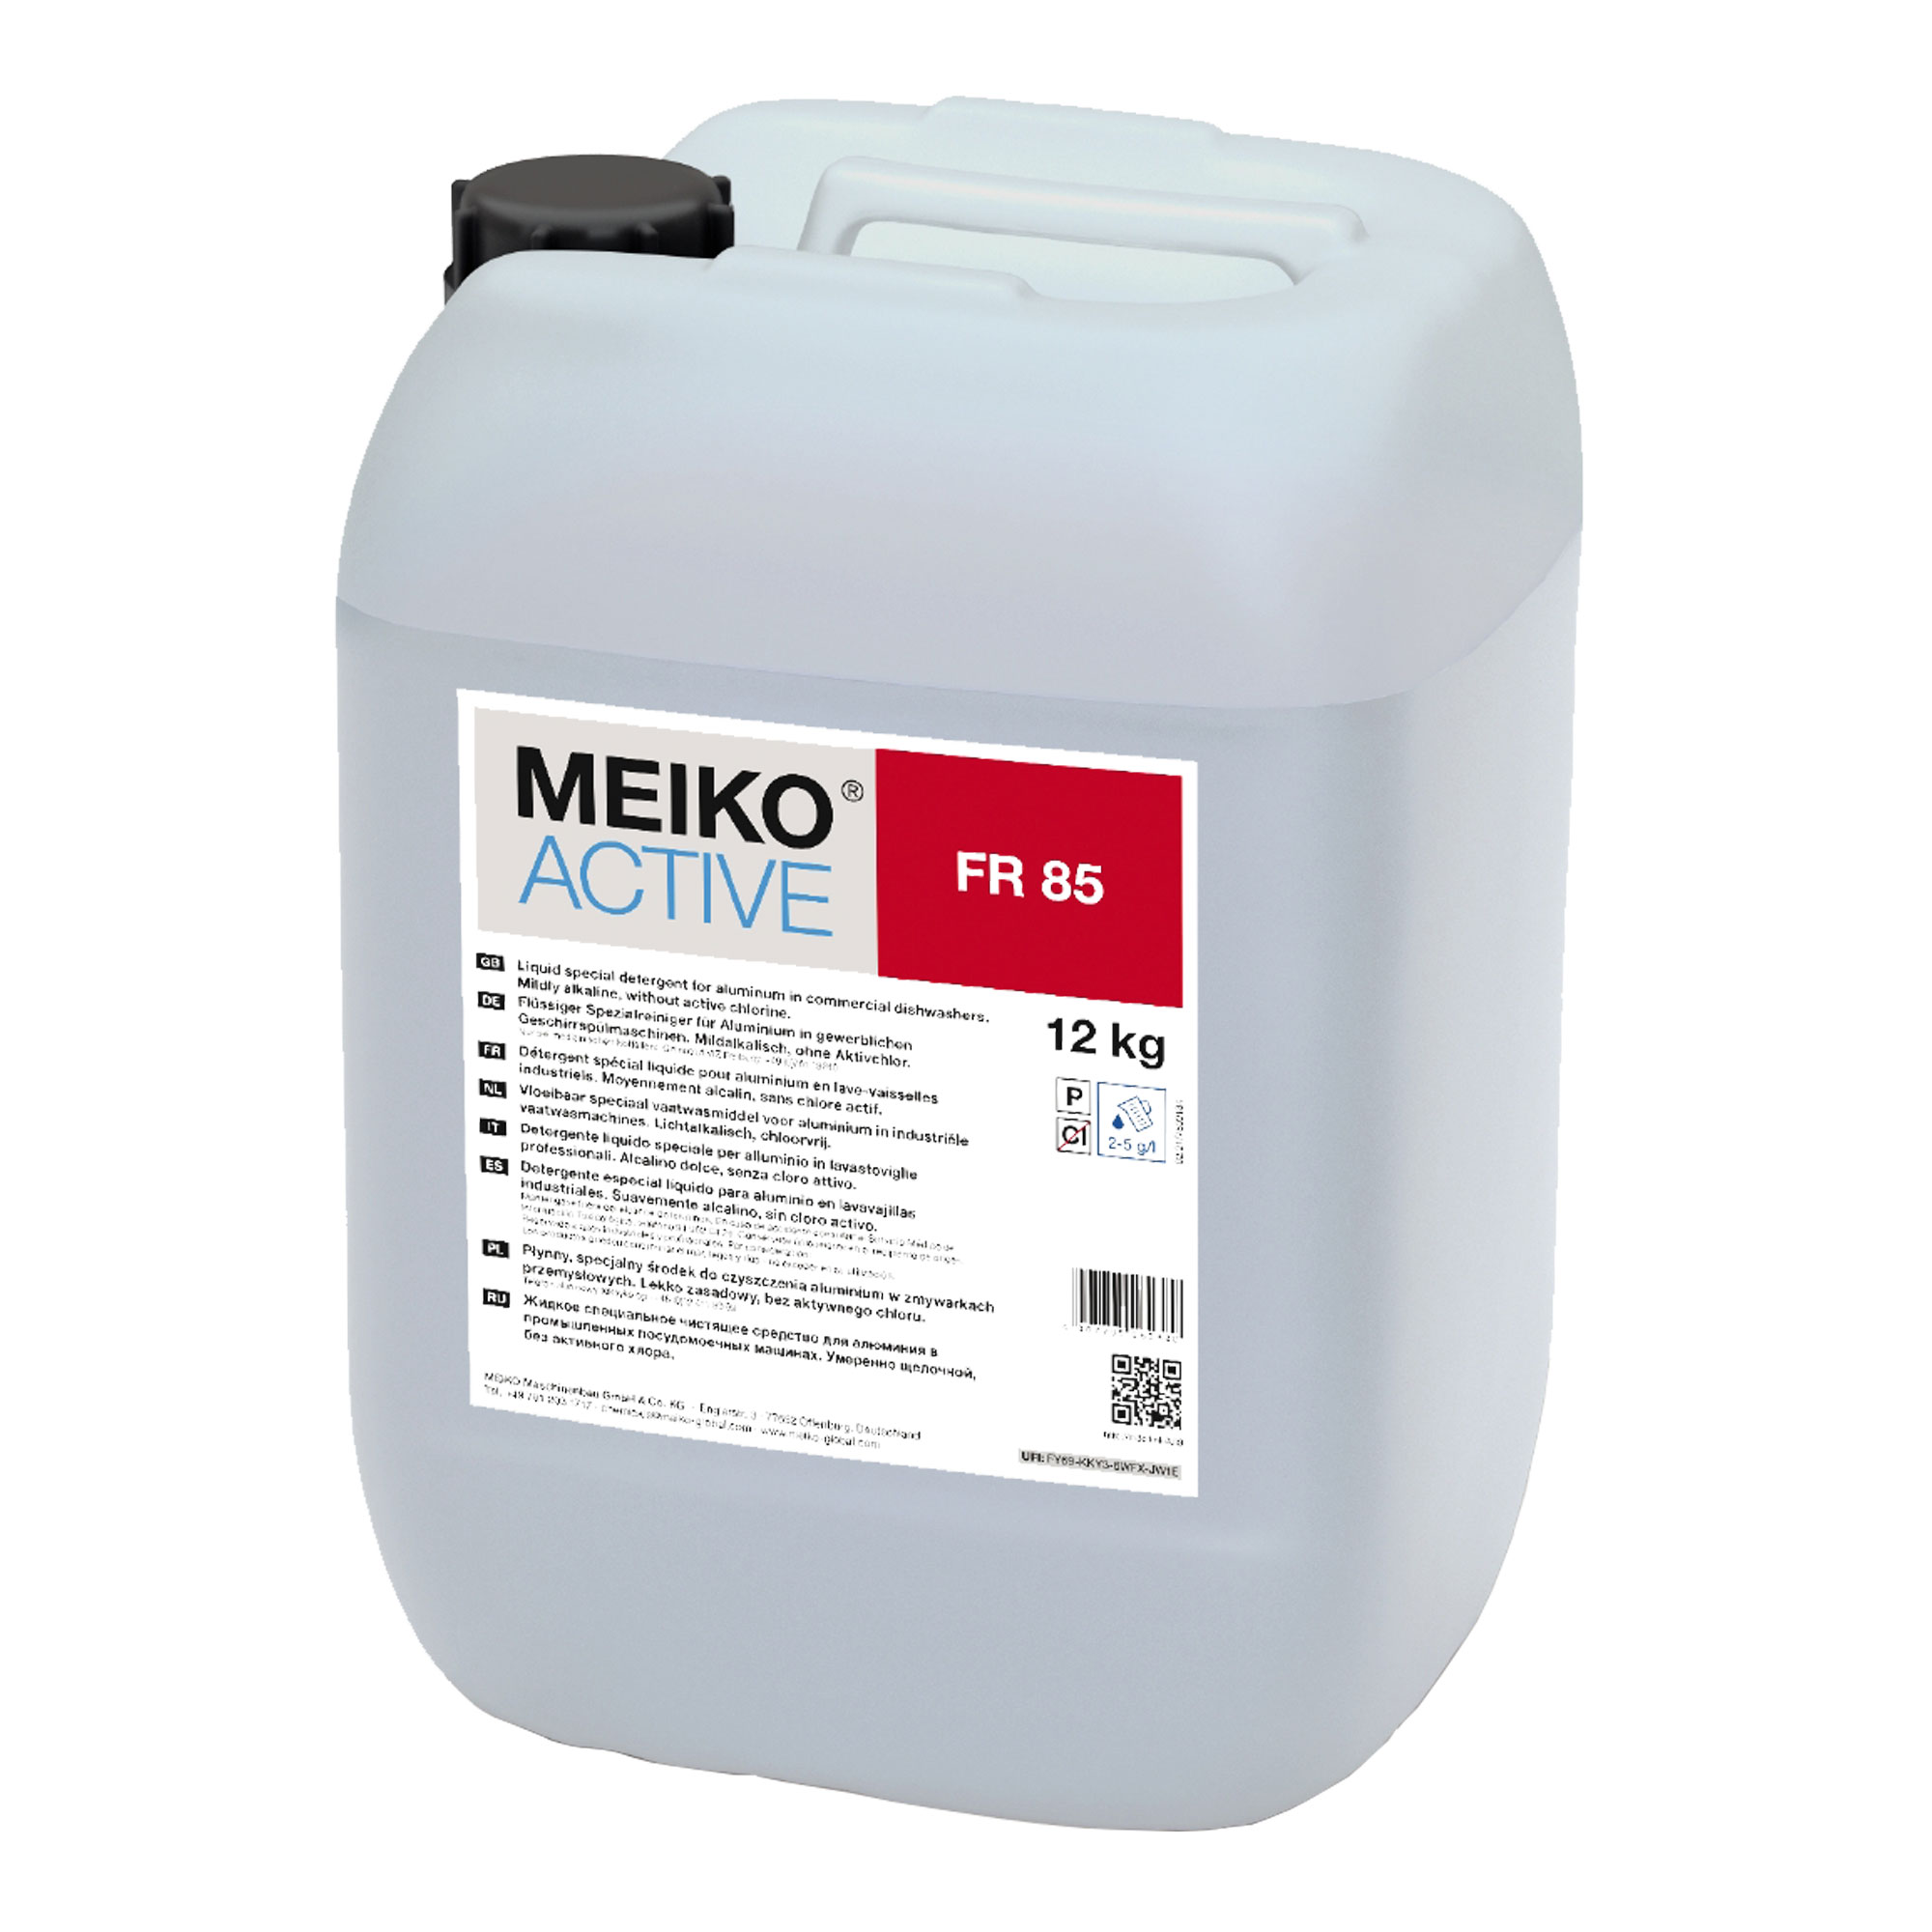 Meiko Active FR 85 flüssiger Spezialreiniger für Spülgut aus Aluminium